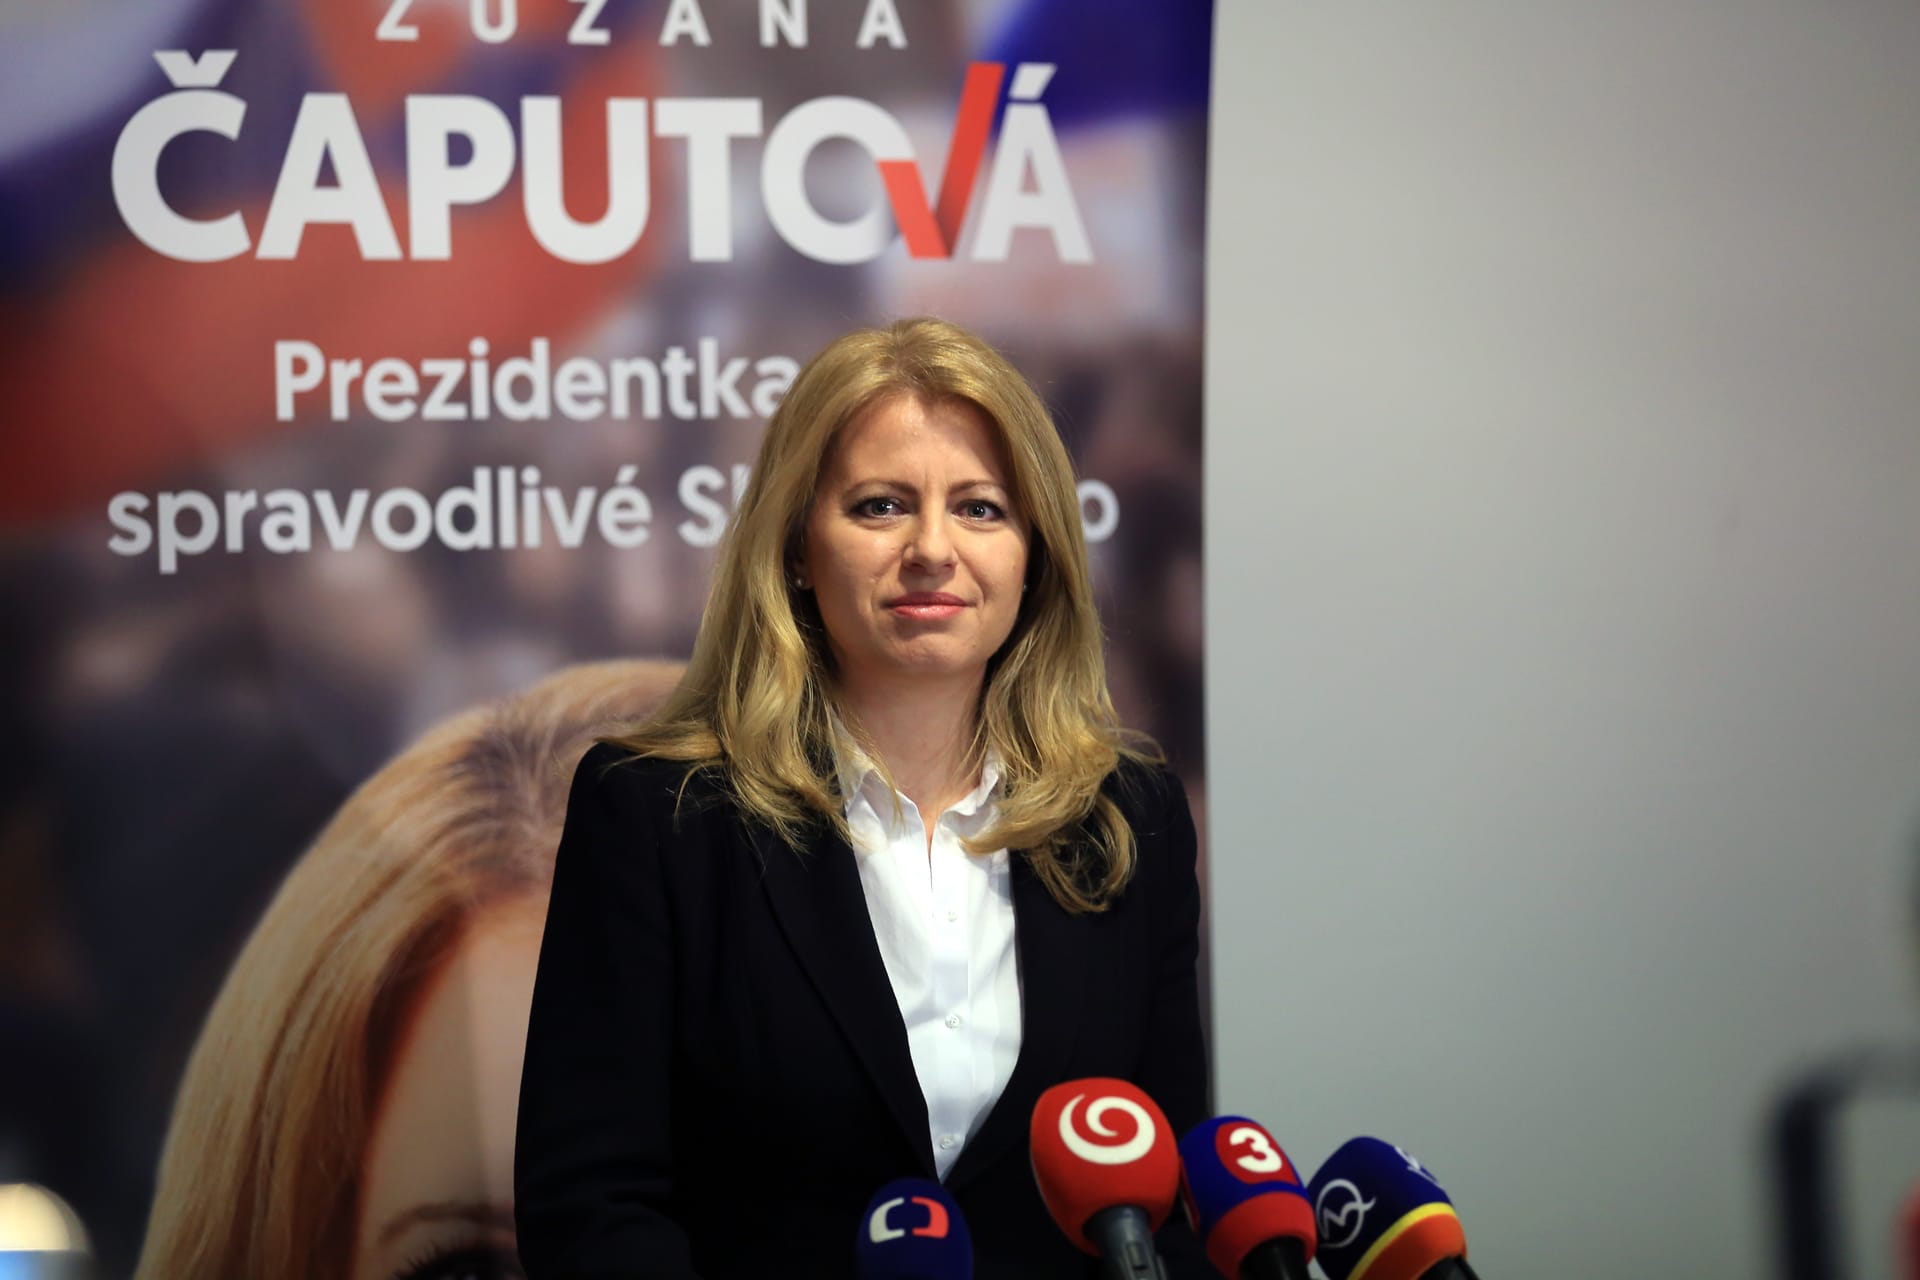  Slovenská prezidentka Zuzana Čaputová zrušila program, je v karanténě.